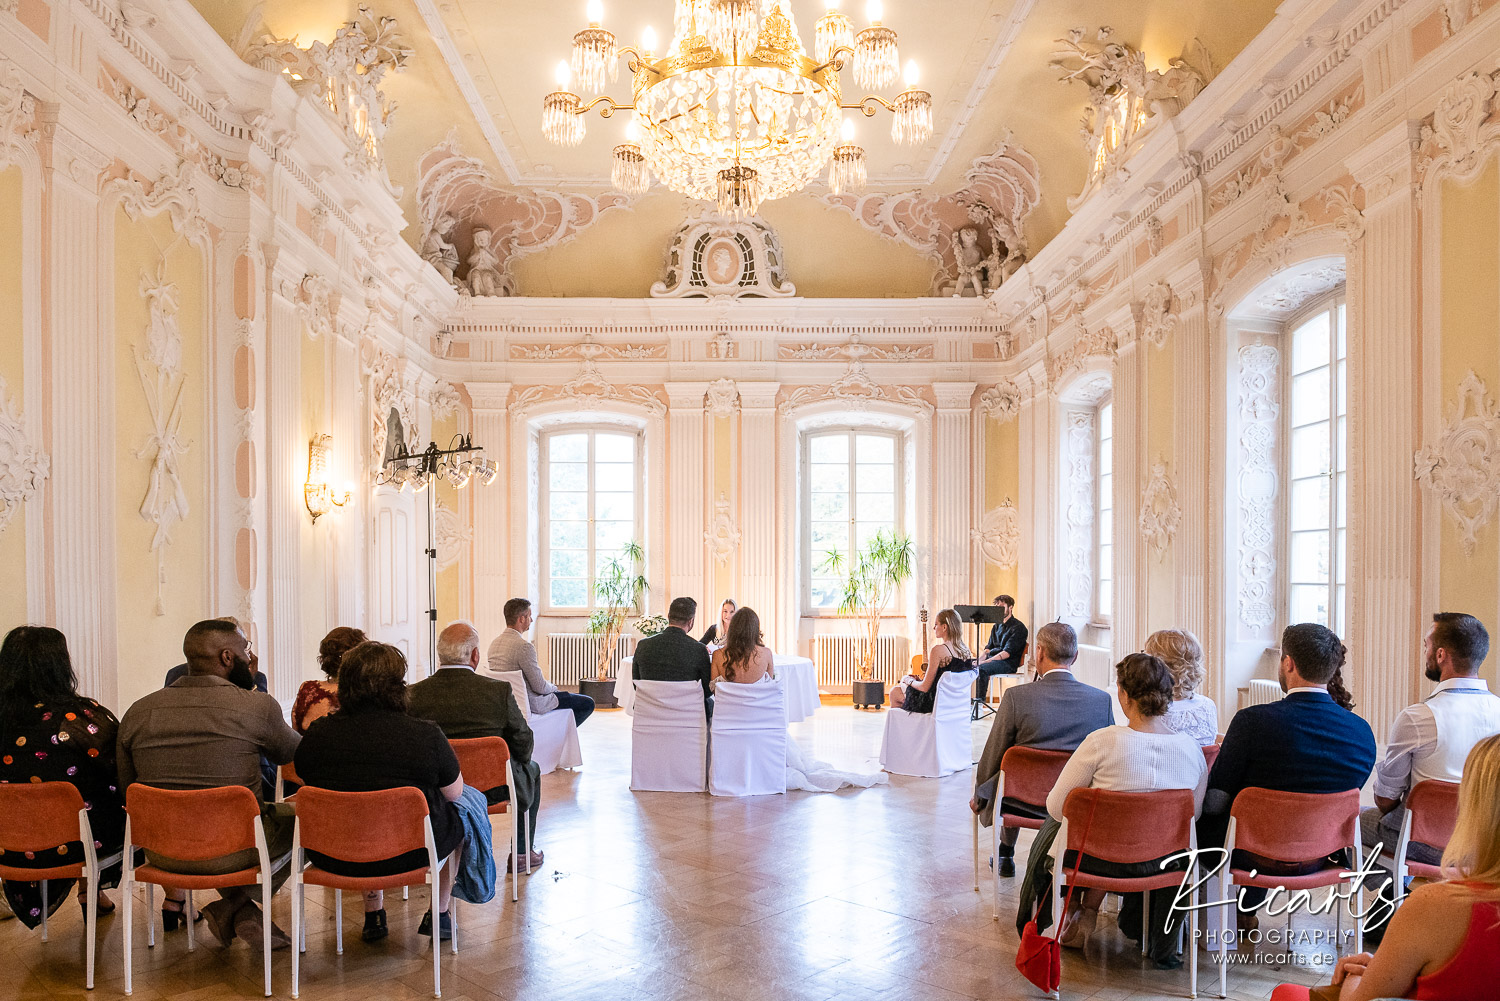 Hochzeitsgesellschaft-und-Brautpaar-bei-standesamtlicher-Trauung-im-Rokokosaal-Schießhaus-Heilbronn